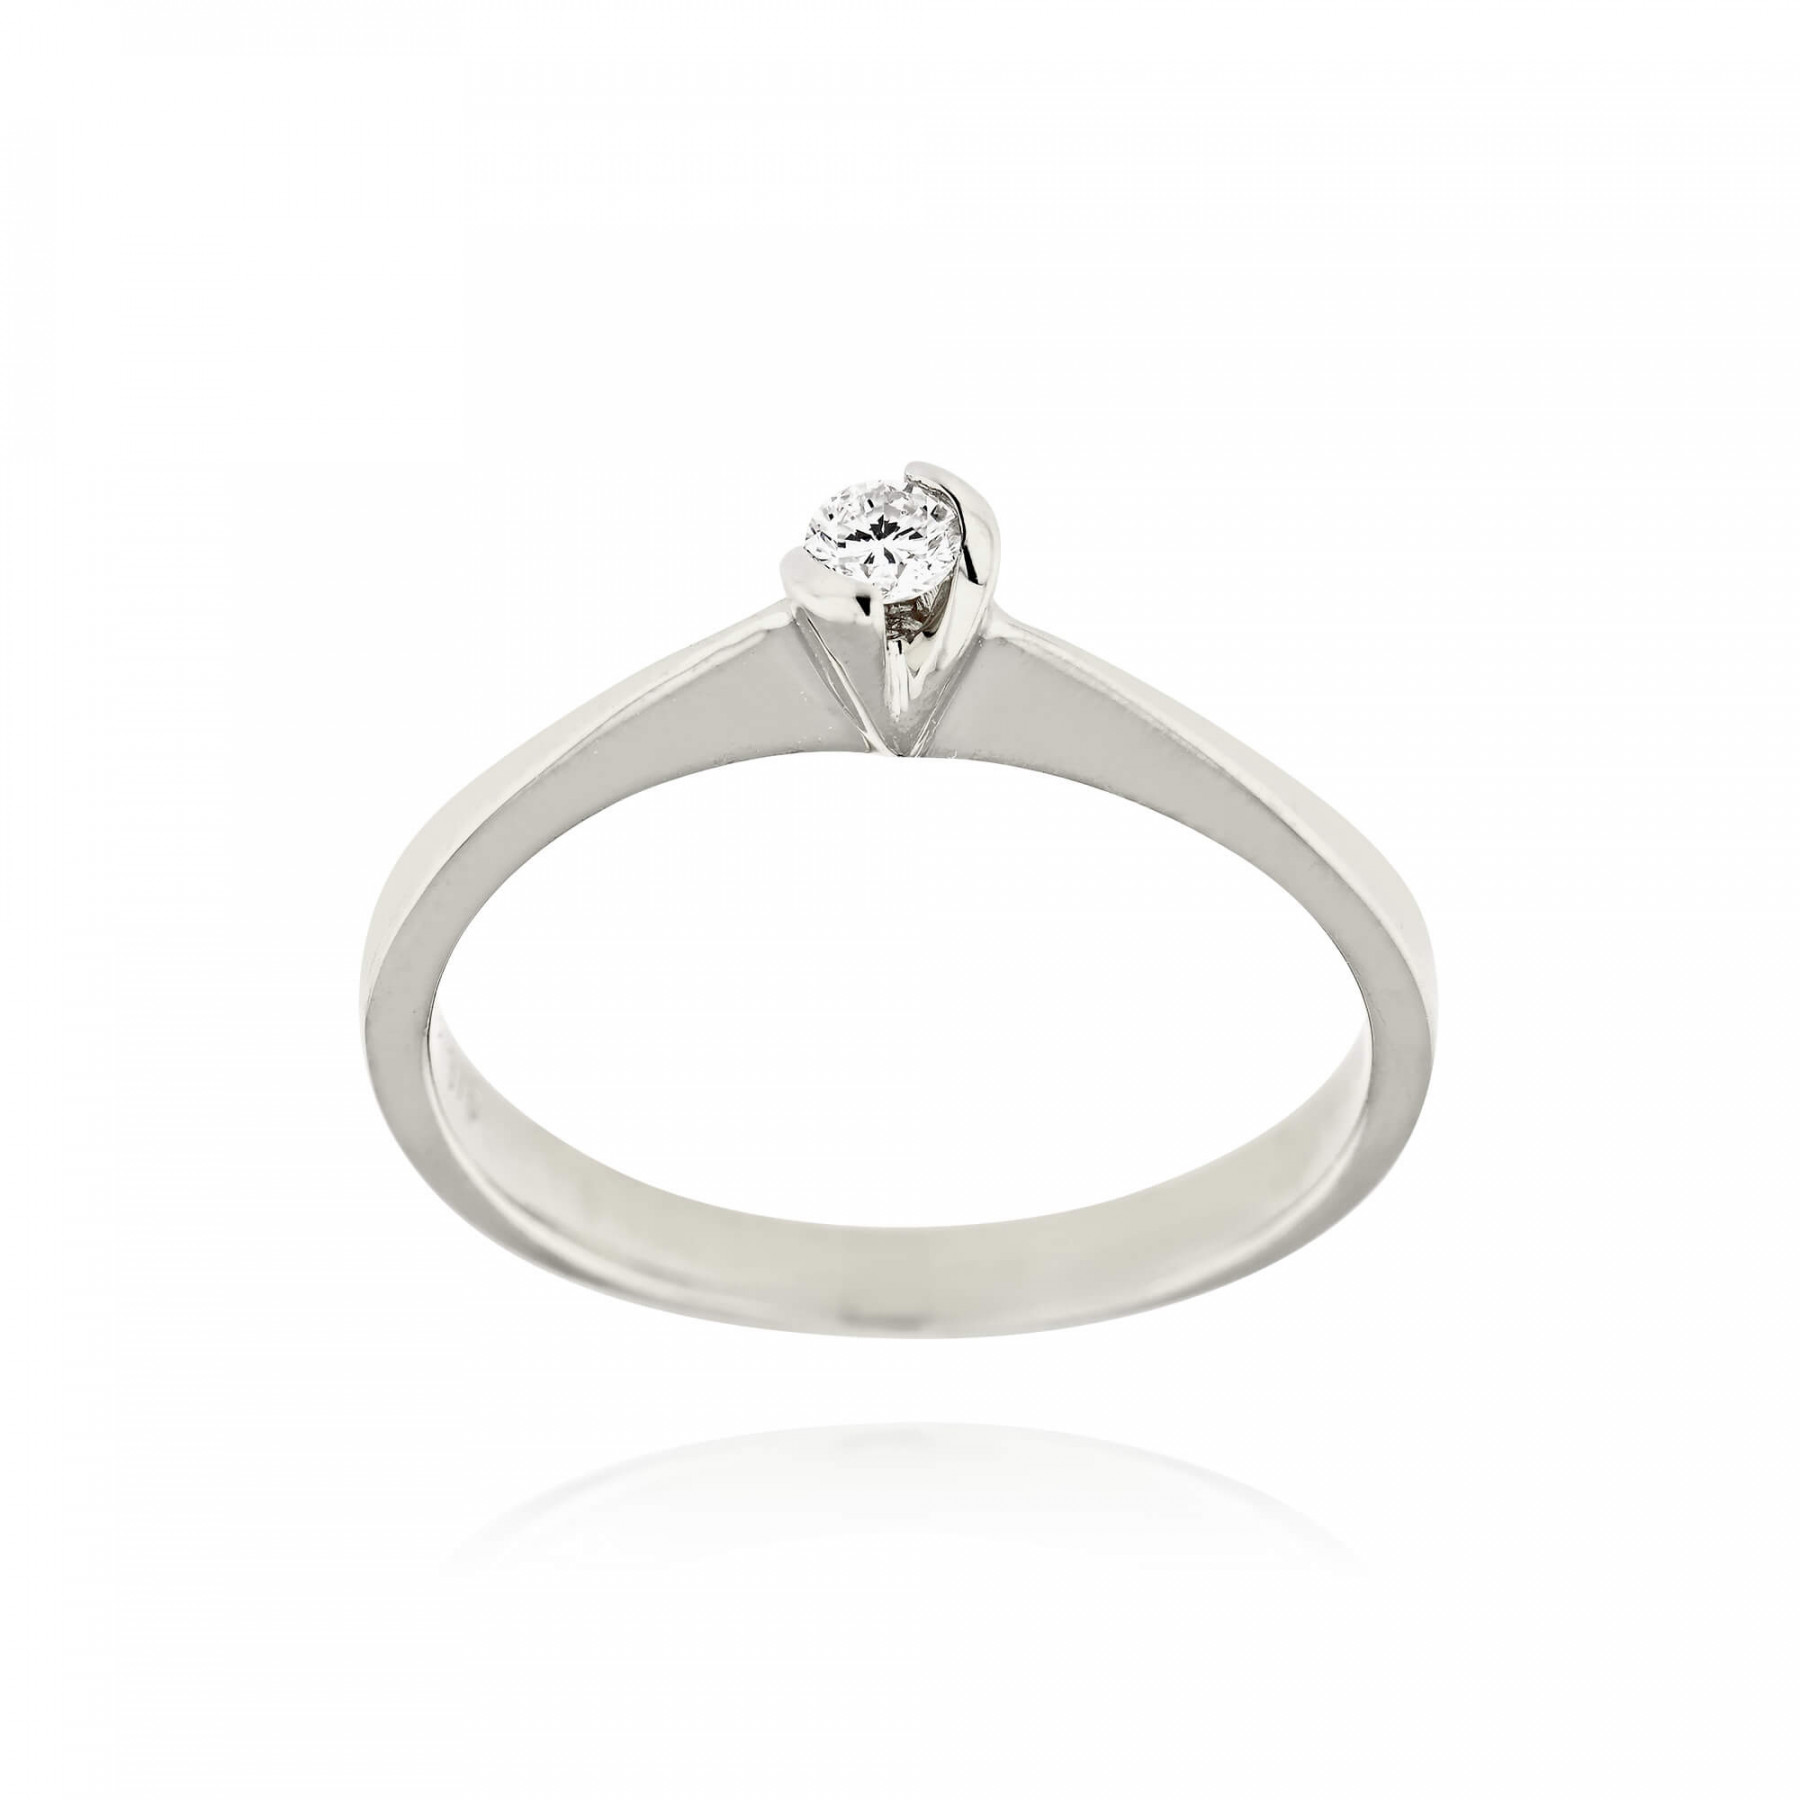 Πως να διαλέξετε σωστά τα δαχτυλίδια του γάμου σας by Skaras Jewels